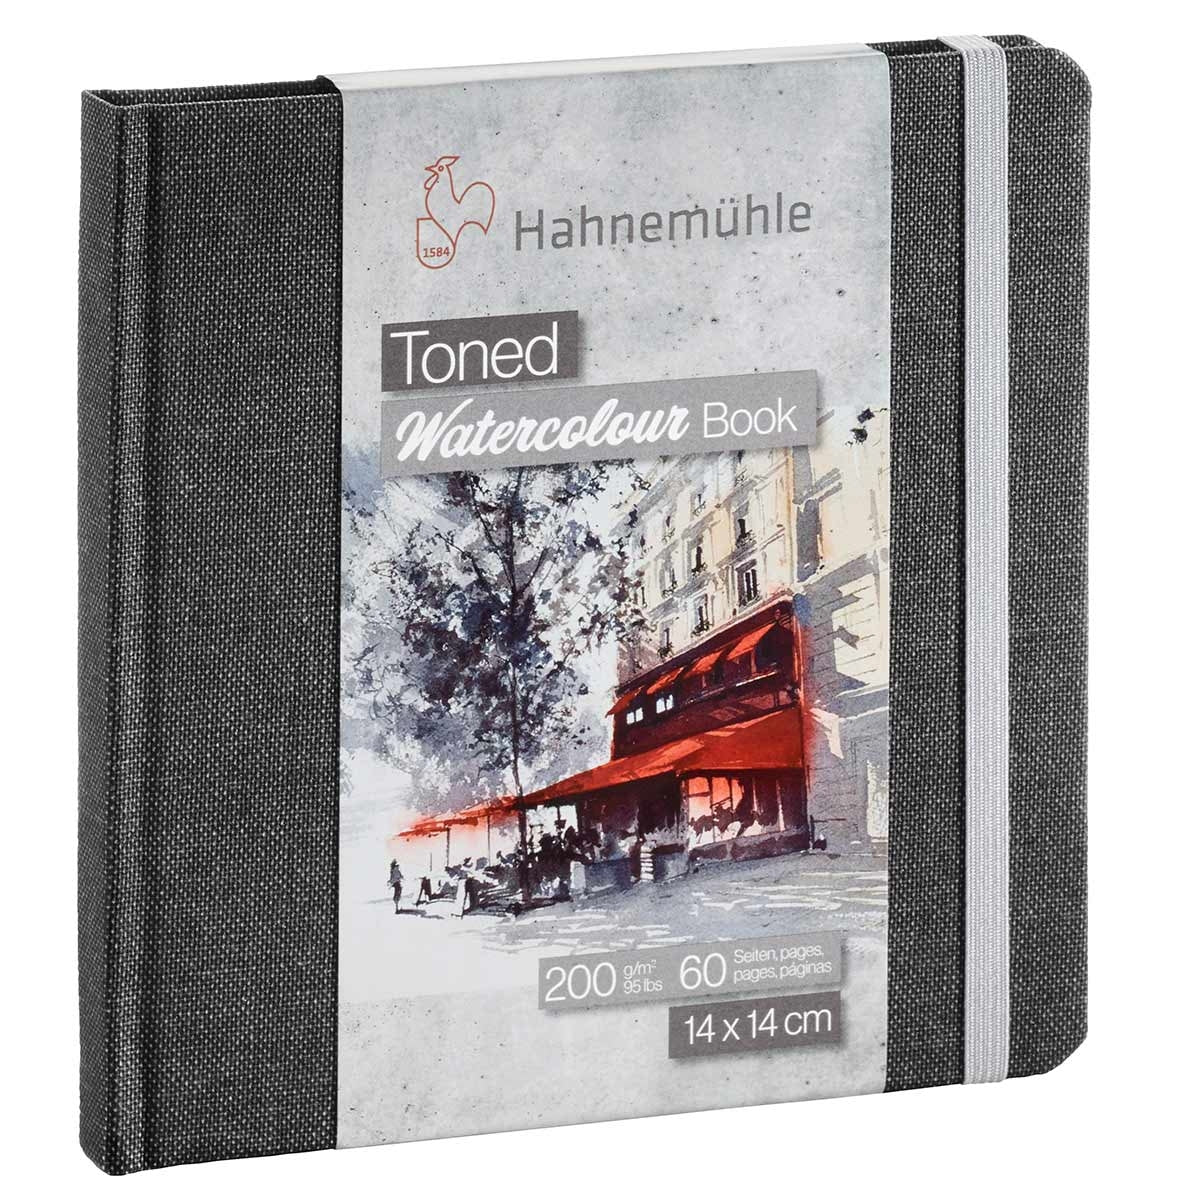 Hahnemuhle - Libri d'acqua tonificati - Grigio 14x cm quadrato